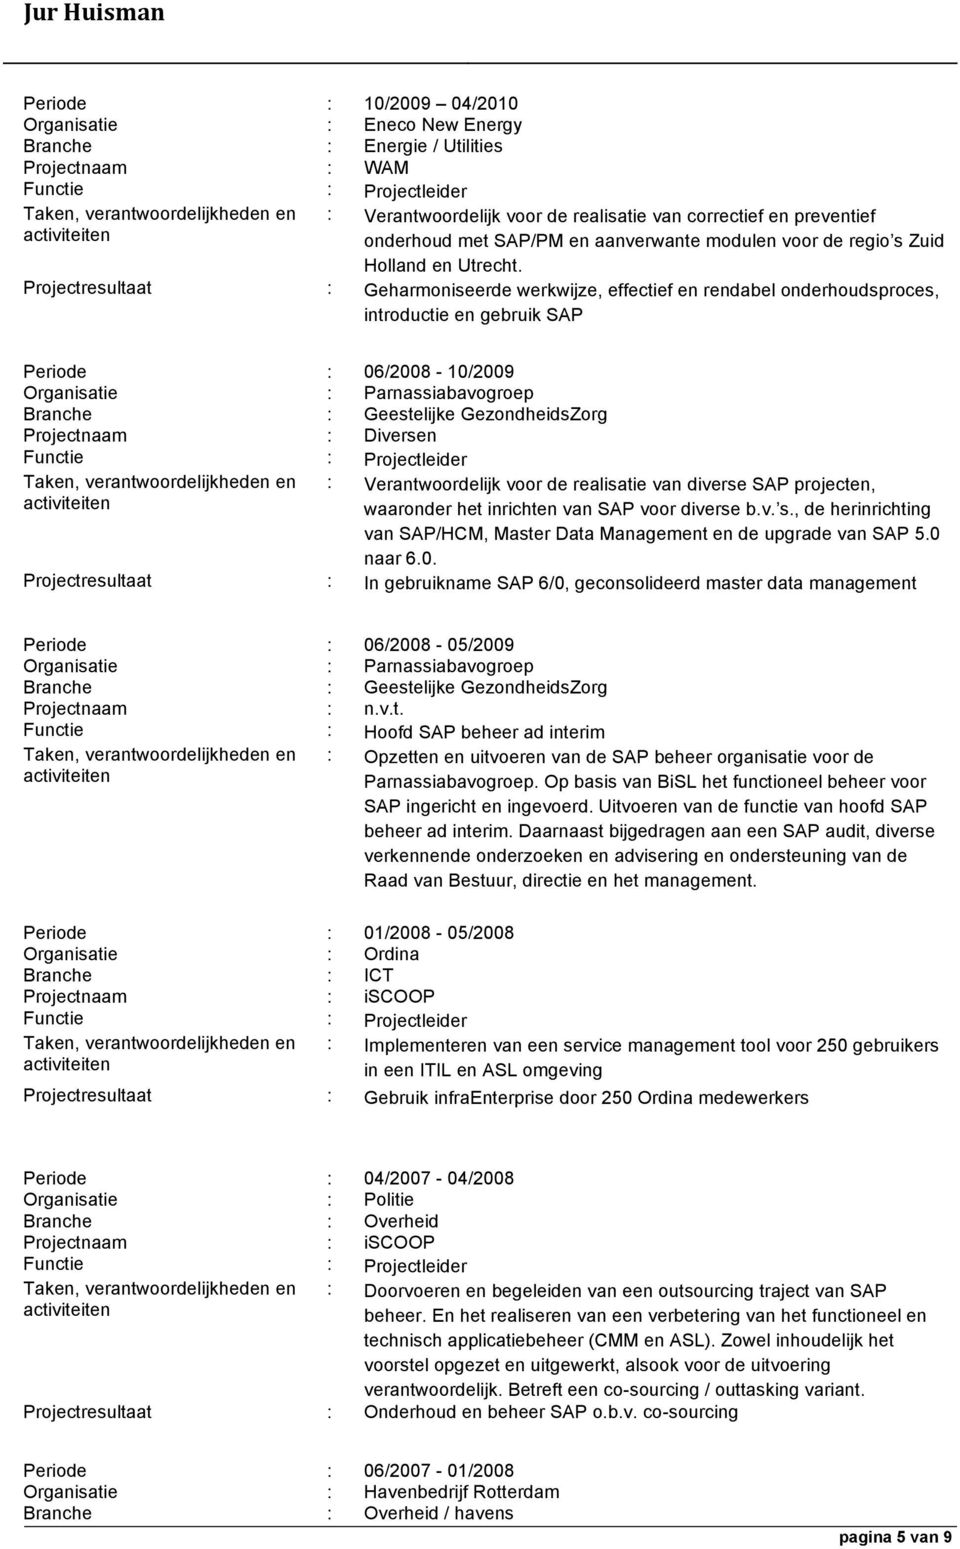 Projectresultaat : Geharmoniseerde werkwijze, effectief en rendabel onderhoudsproces, introductie en gebruik SAP Periode : 06/2008-10/2009 Organisatie : Parnassiabavogroep Branche : Geestelijke